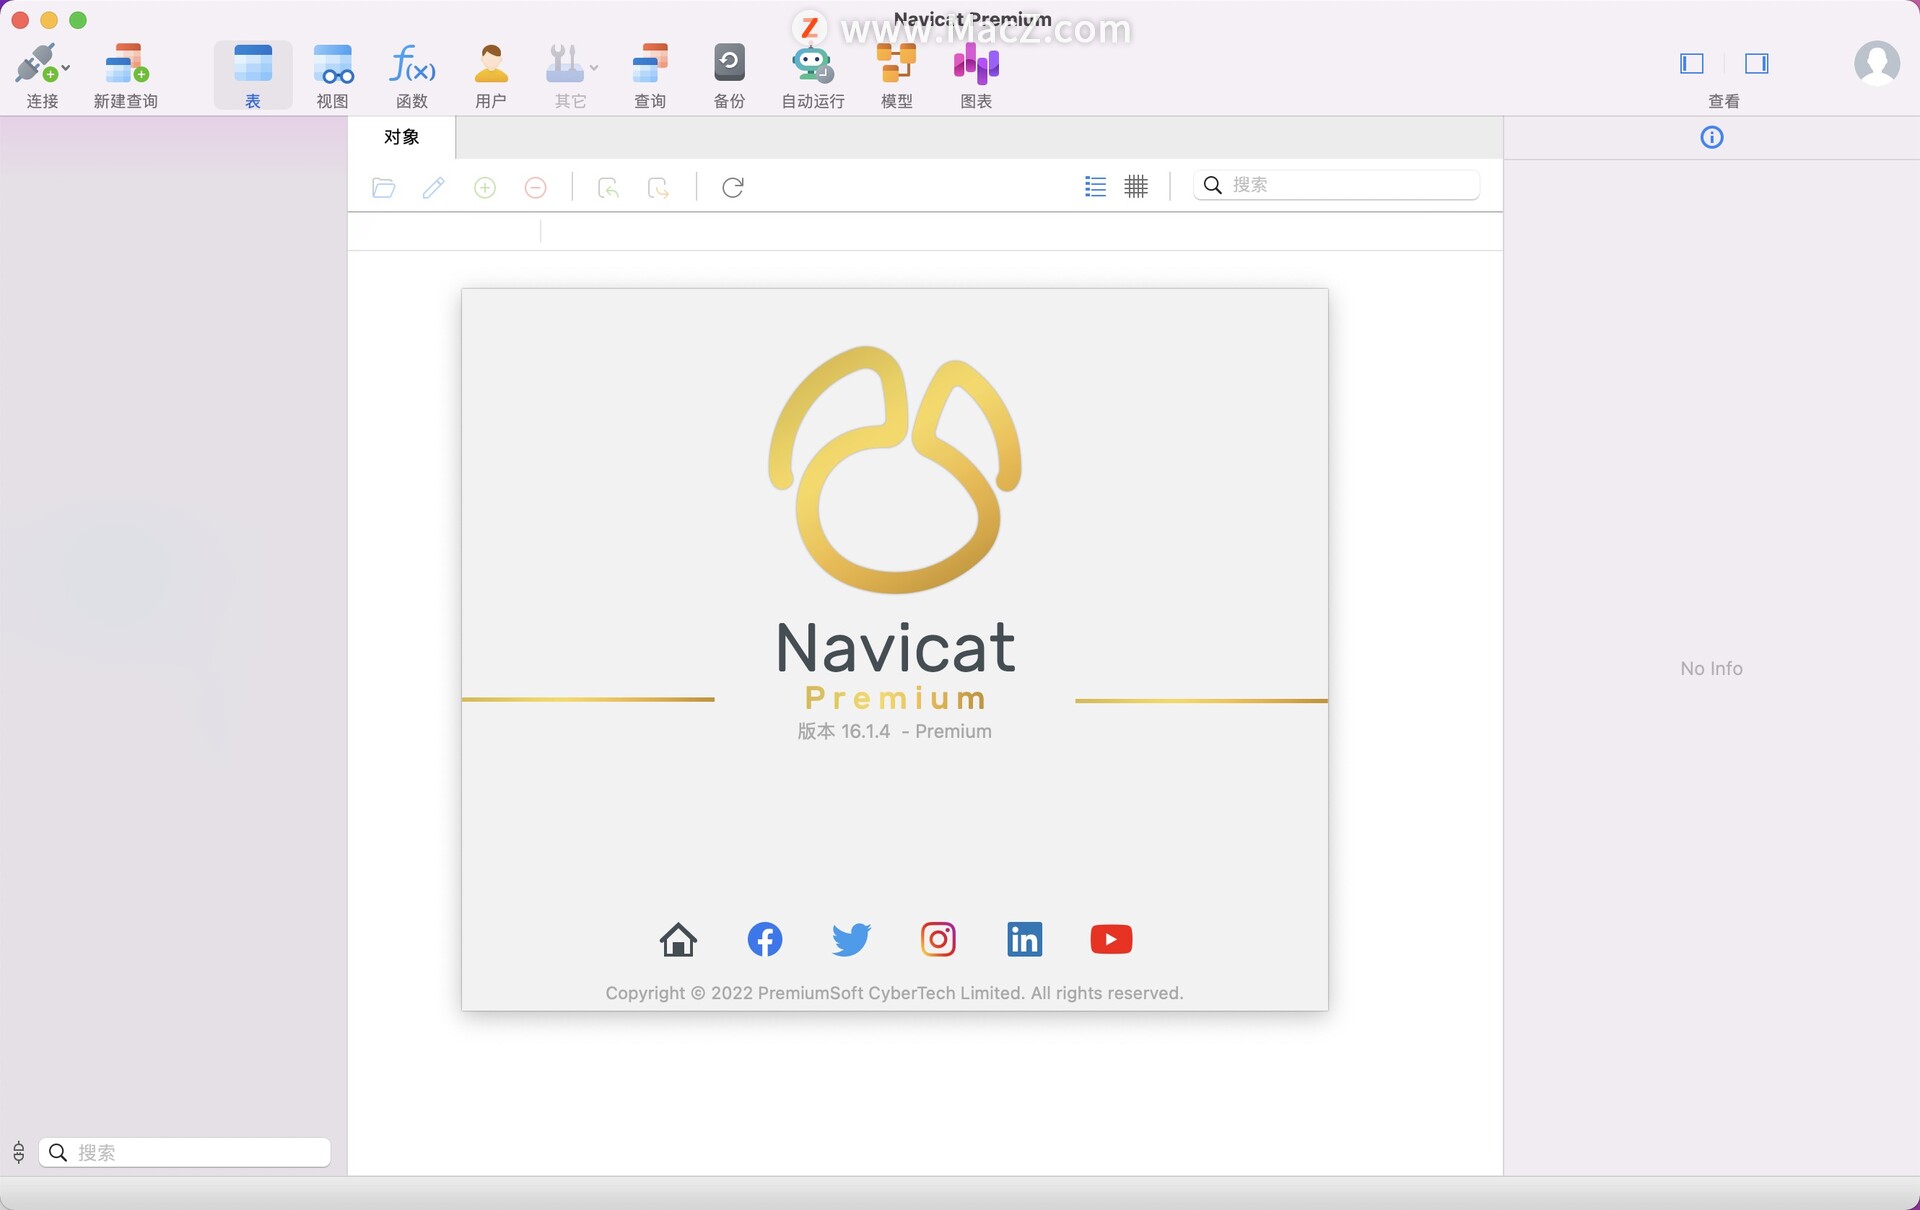 Navicat Premium for apple download